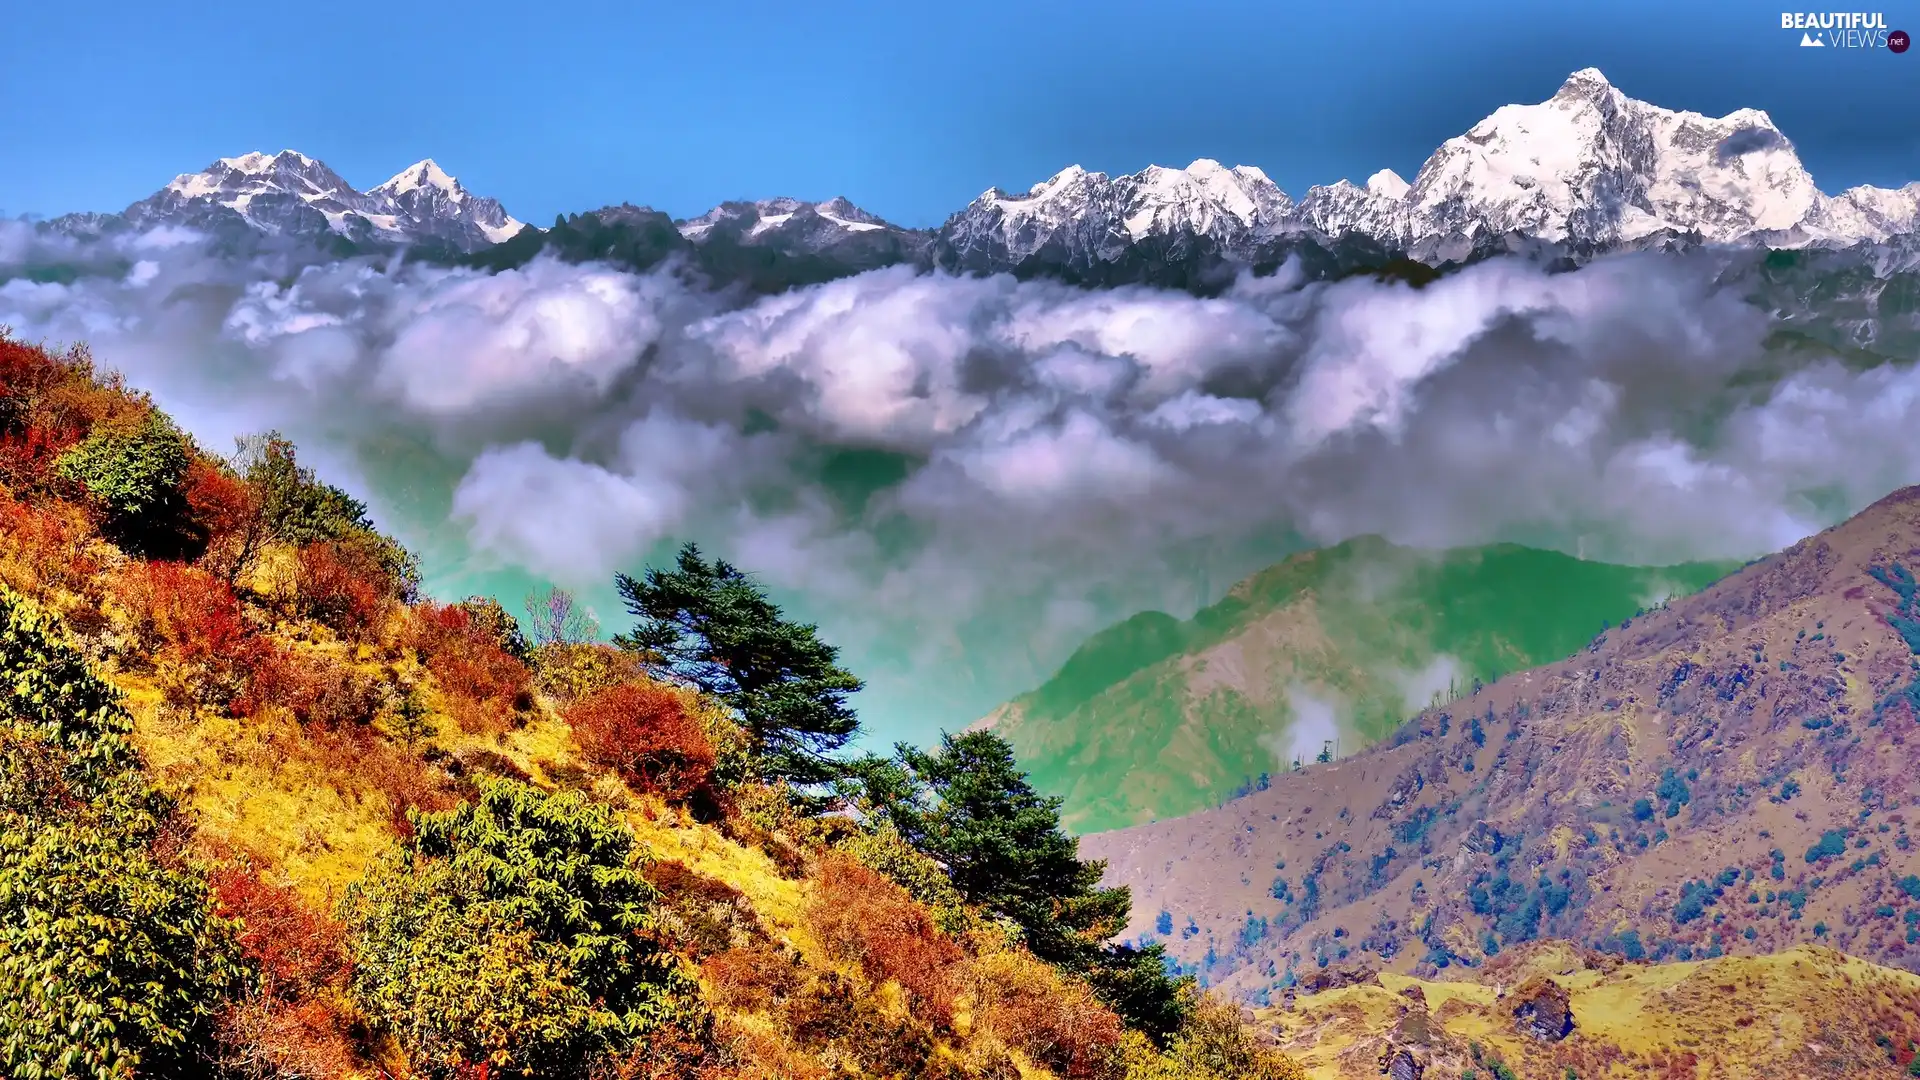 Himalayas, clouds, Mountains